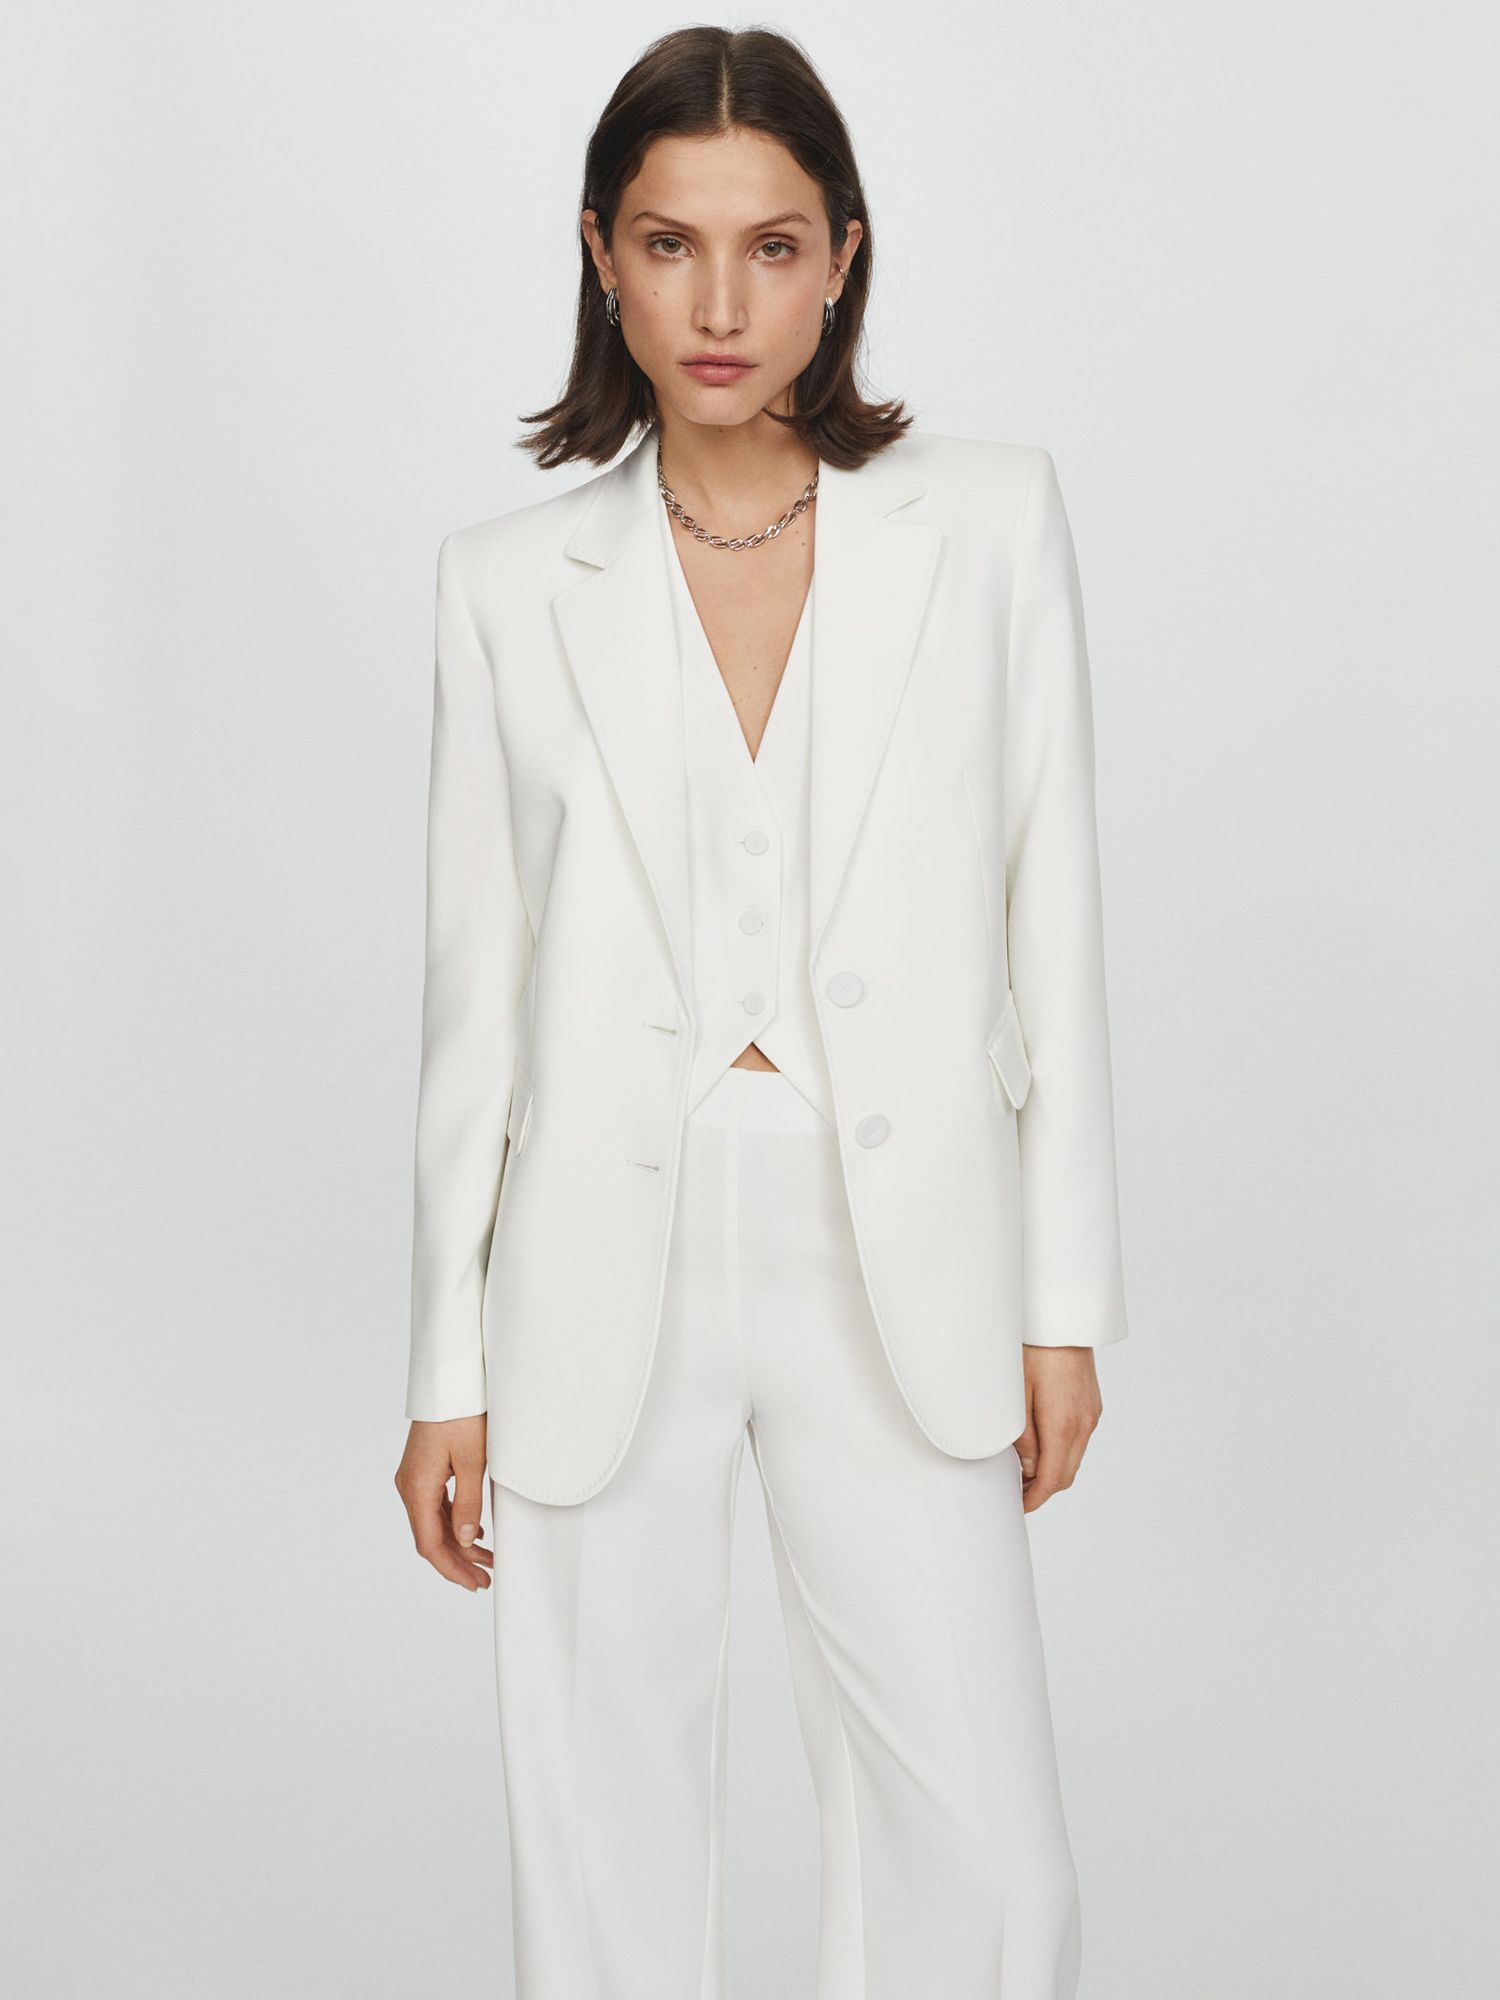 Mango Iguana Single Breasted Suit Blazer, White, L